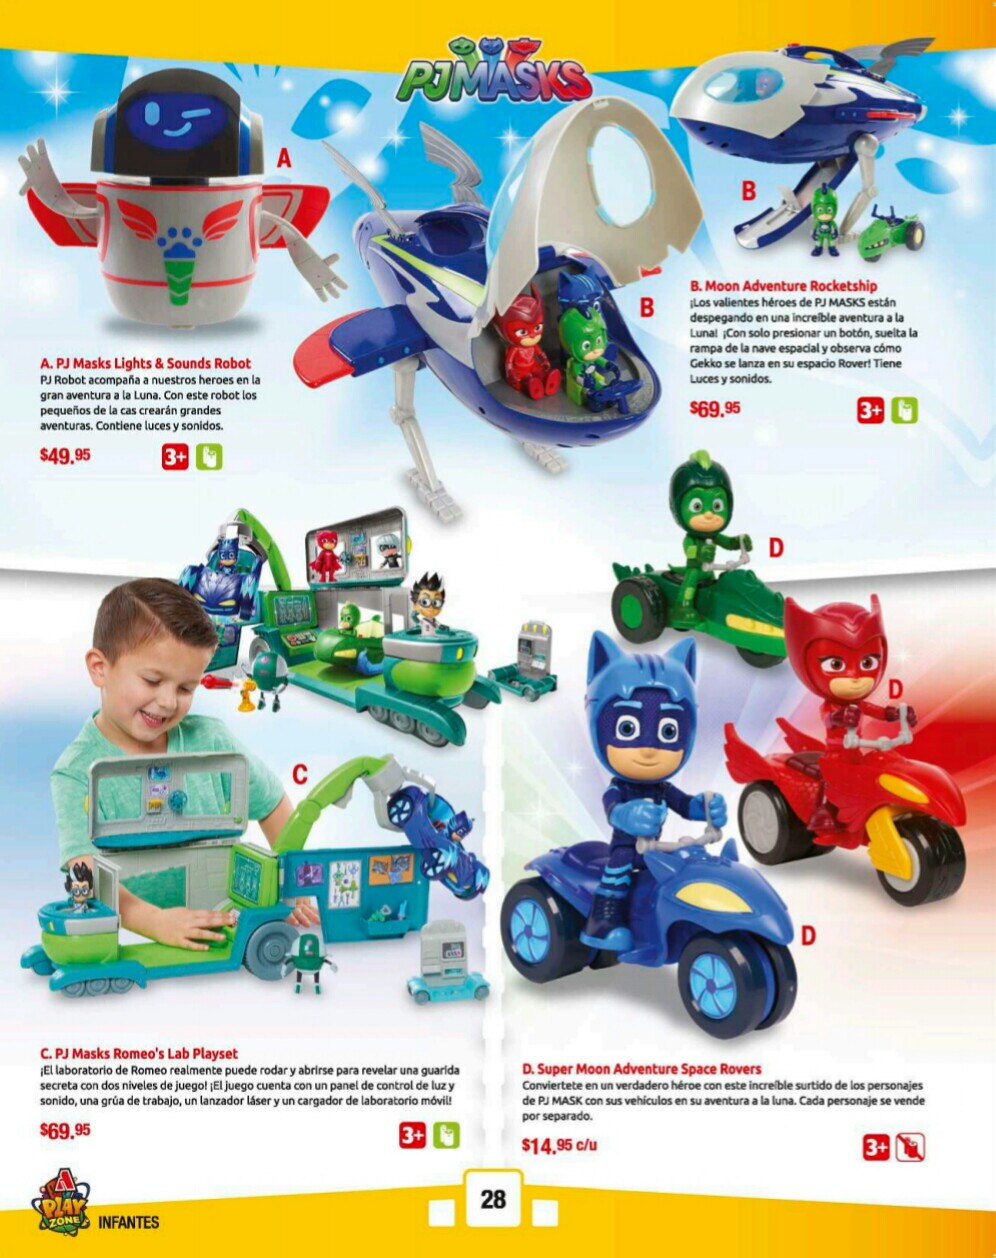 Catalogos juguetes farmacia Arrocha 2018 p28